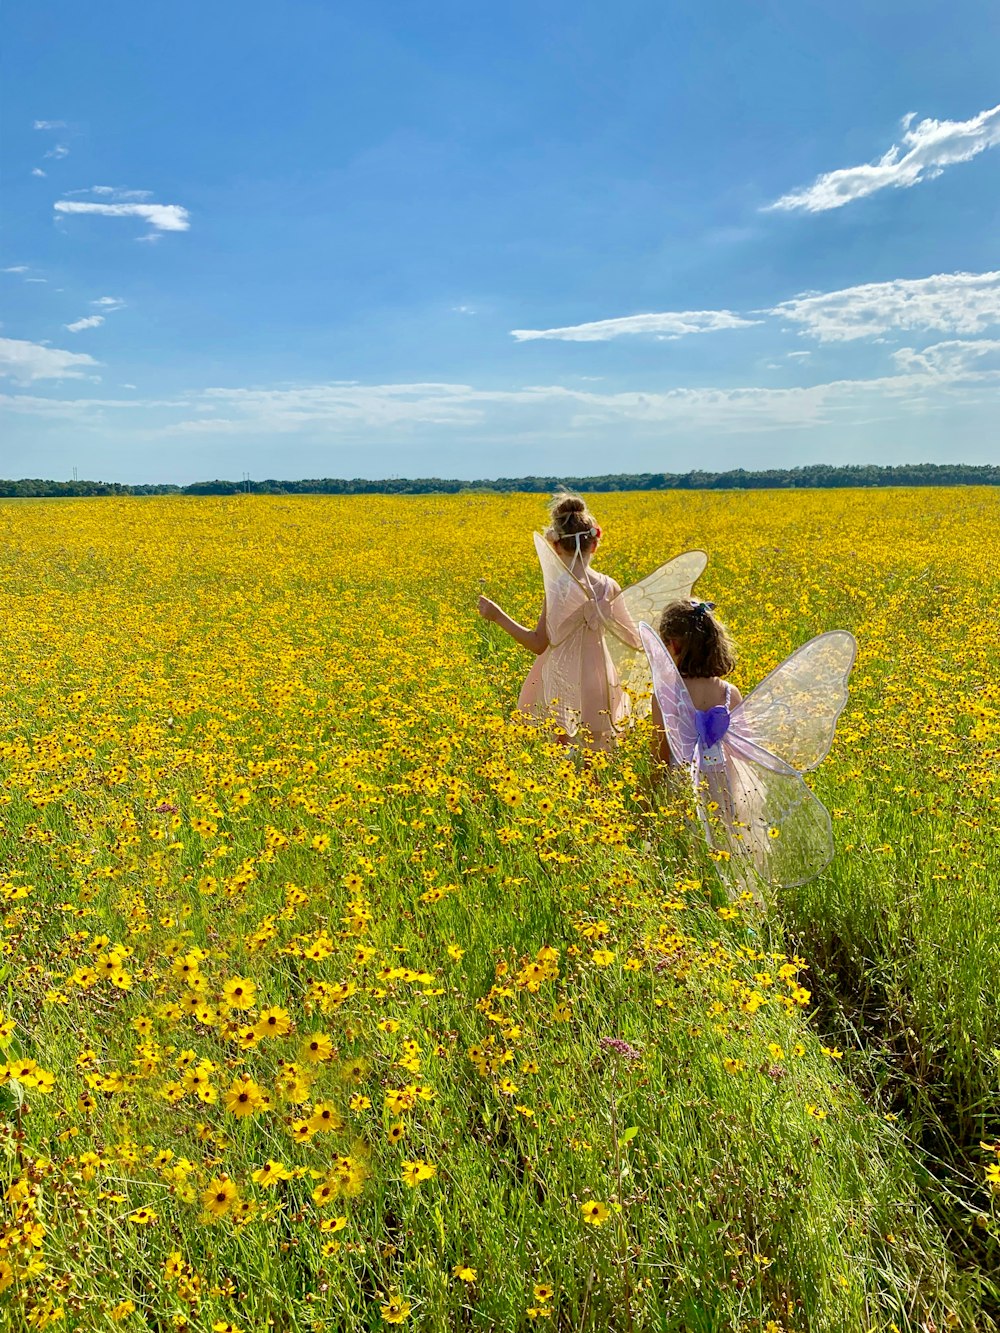 두 소녀가 요정 드레스를 입고 노란 꽃밭을 걷고 있다.